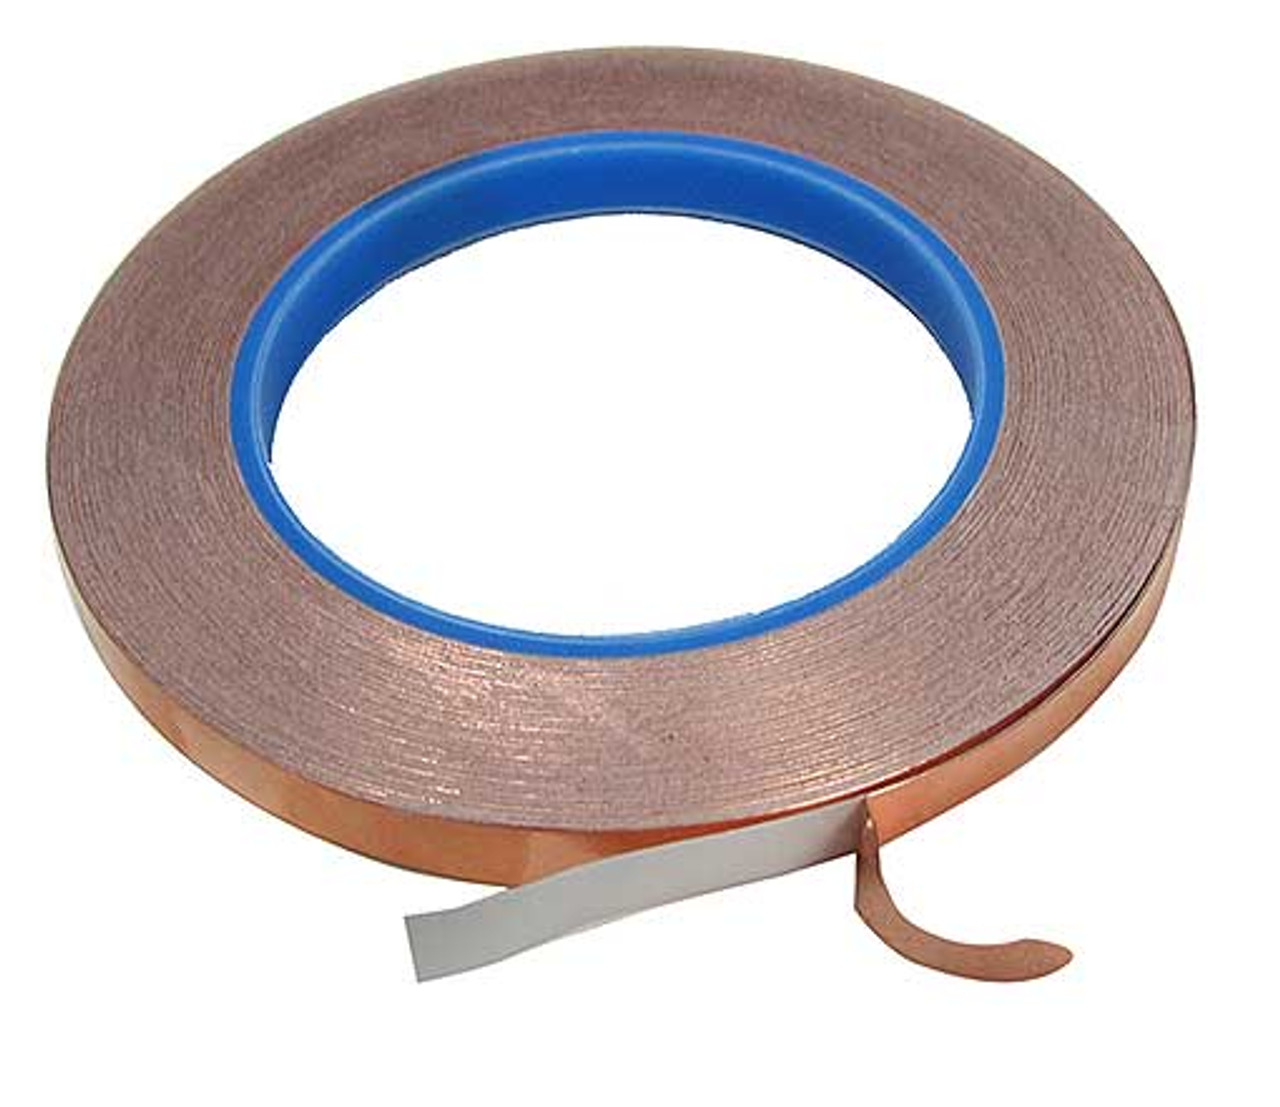 3M™ Conductive Copper Foil Tape 3313 Copper, 1-1/2 in x 18 yd 3.0